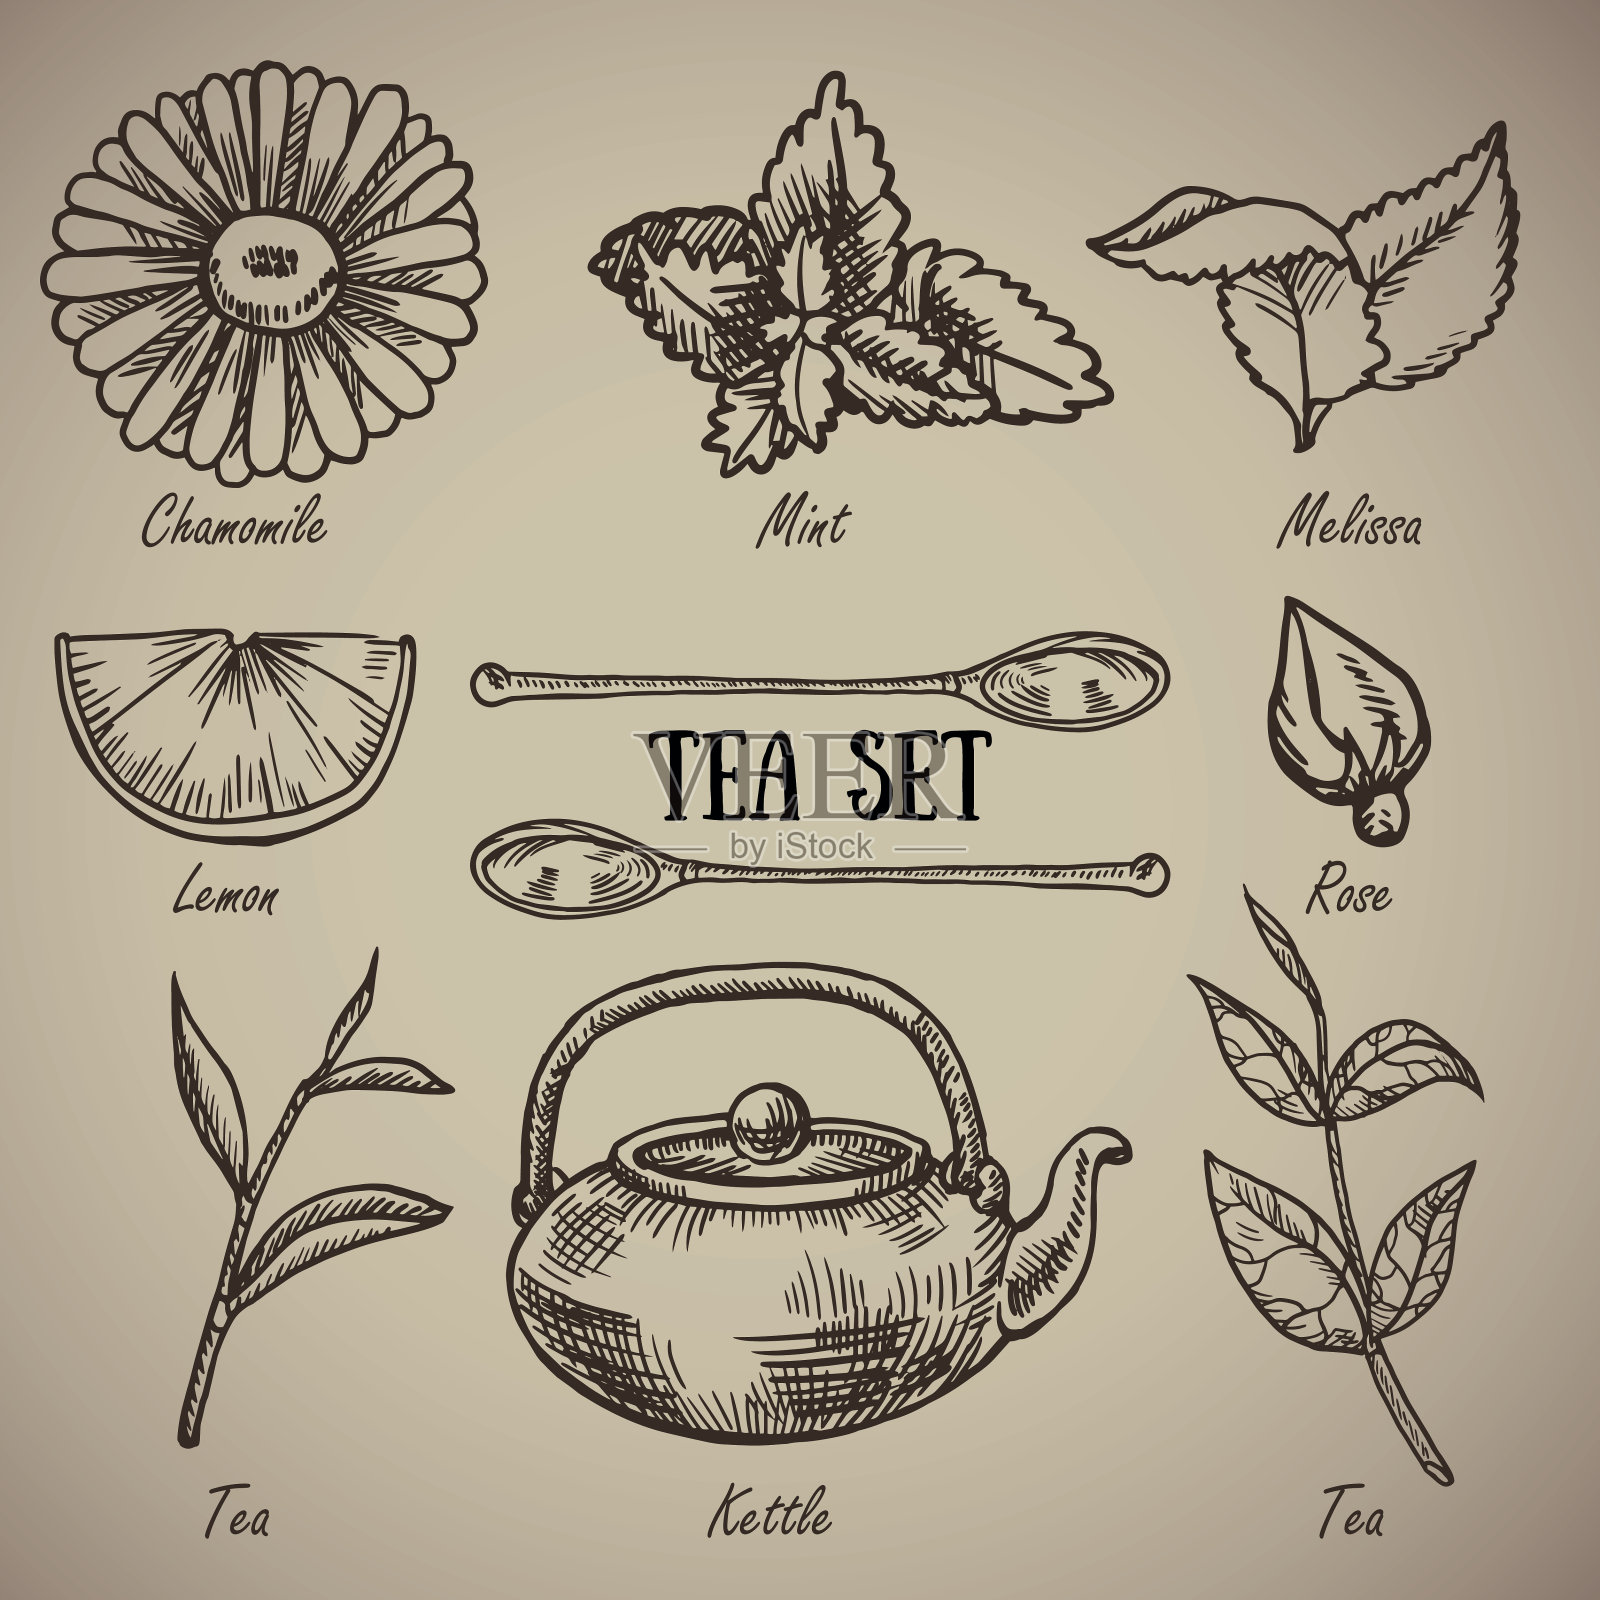 雕刻一套茶具:甘菊、香蜂草、薄荷、柠檬、汤匙、玫瑰、茶叶、水壶。一套茶醉鬼的古董。为餐厅雕刻菜单。矢量插图。插画图片素材